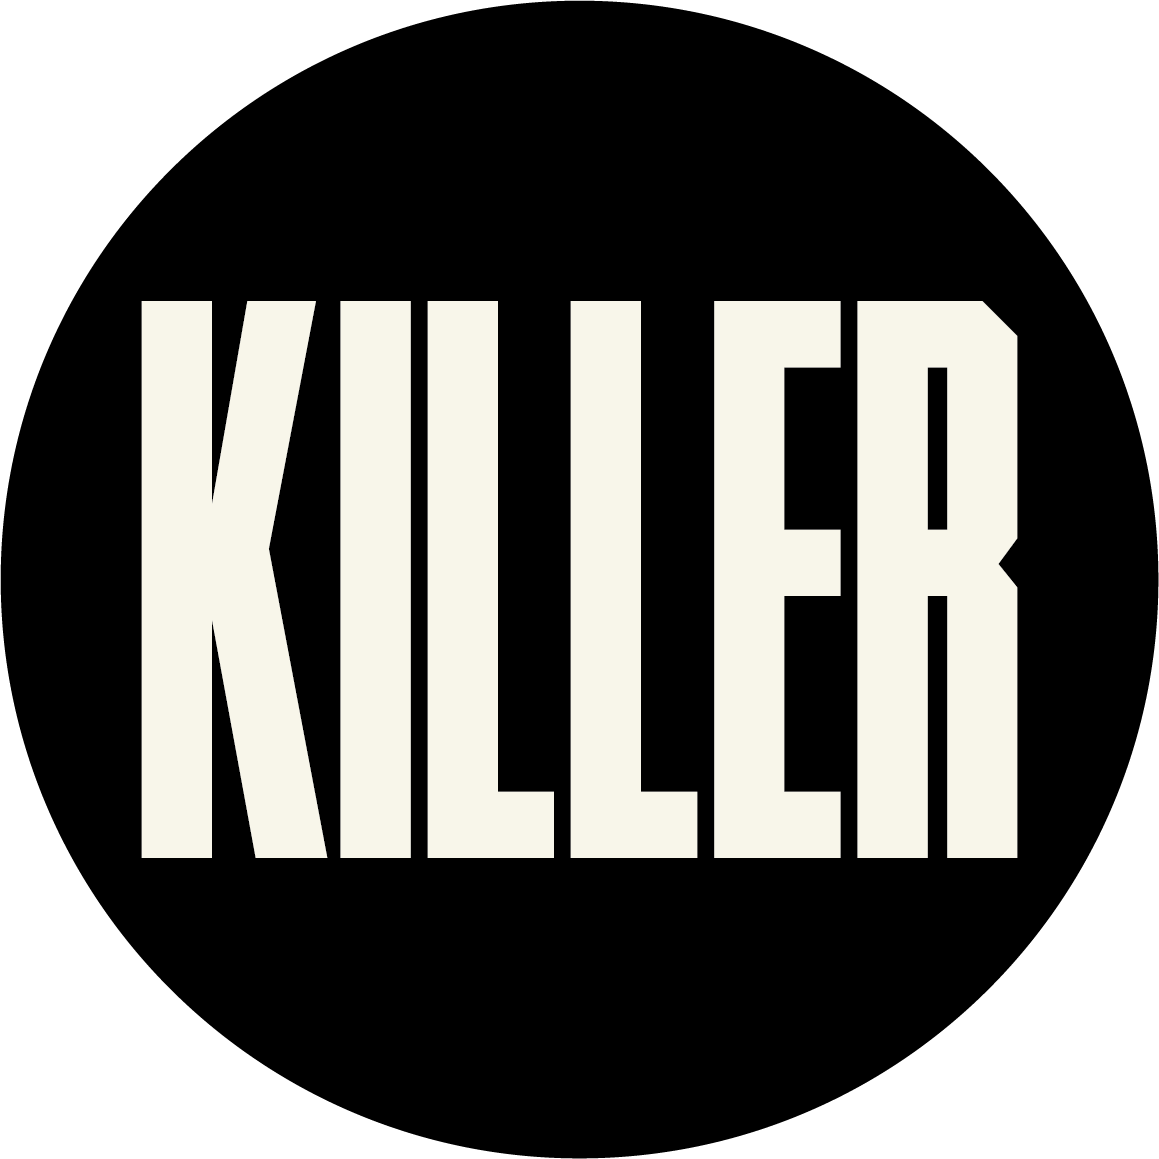 KILLER Art + Production